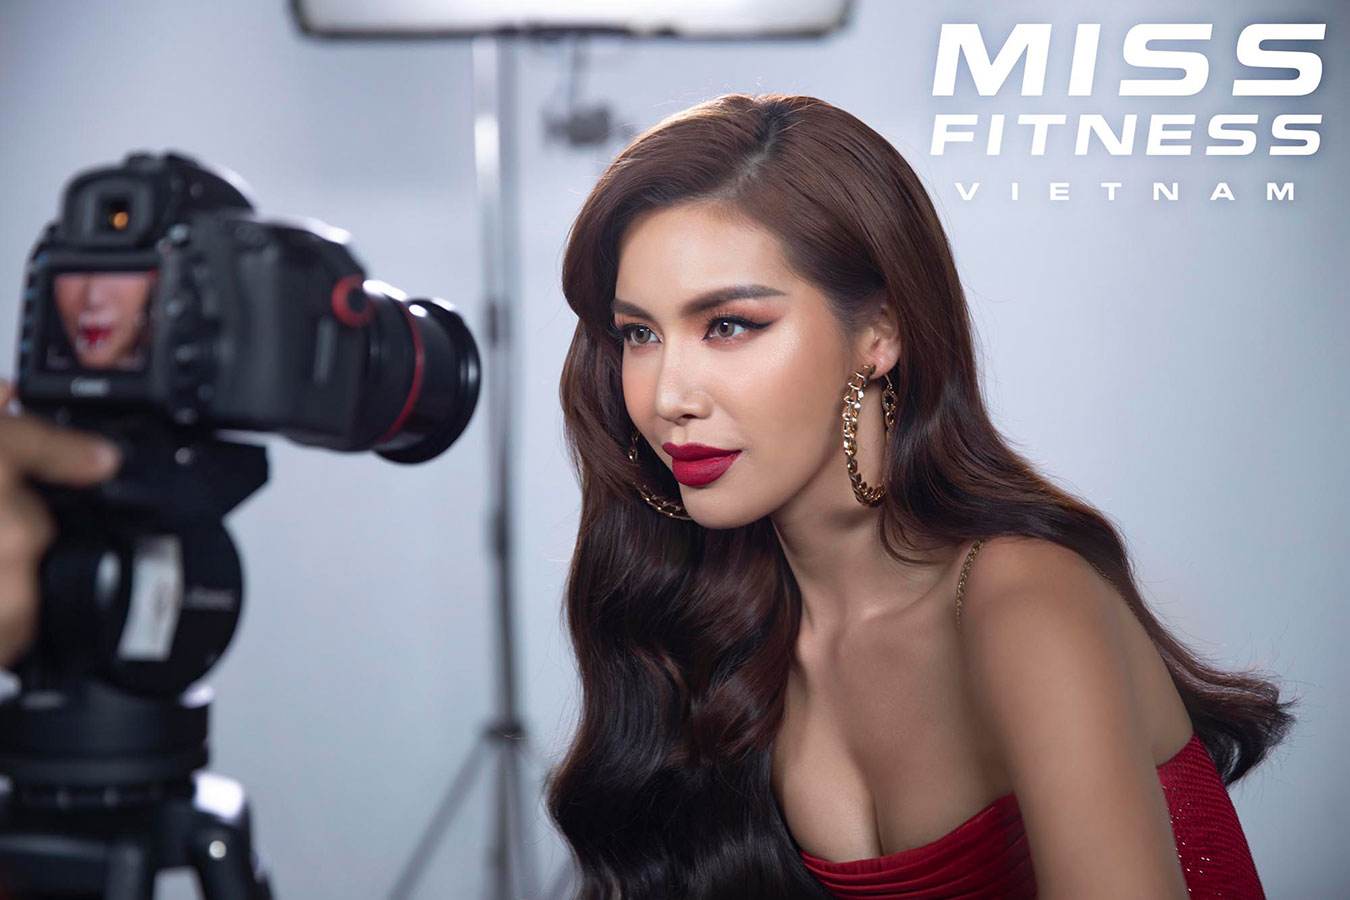 Minh Tú, Trần Tiểu Vy hóa chị em song sinh khi làm giám khảo Miss Fitness Vietnam 2020